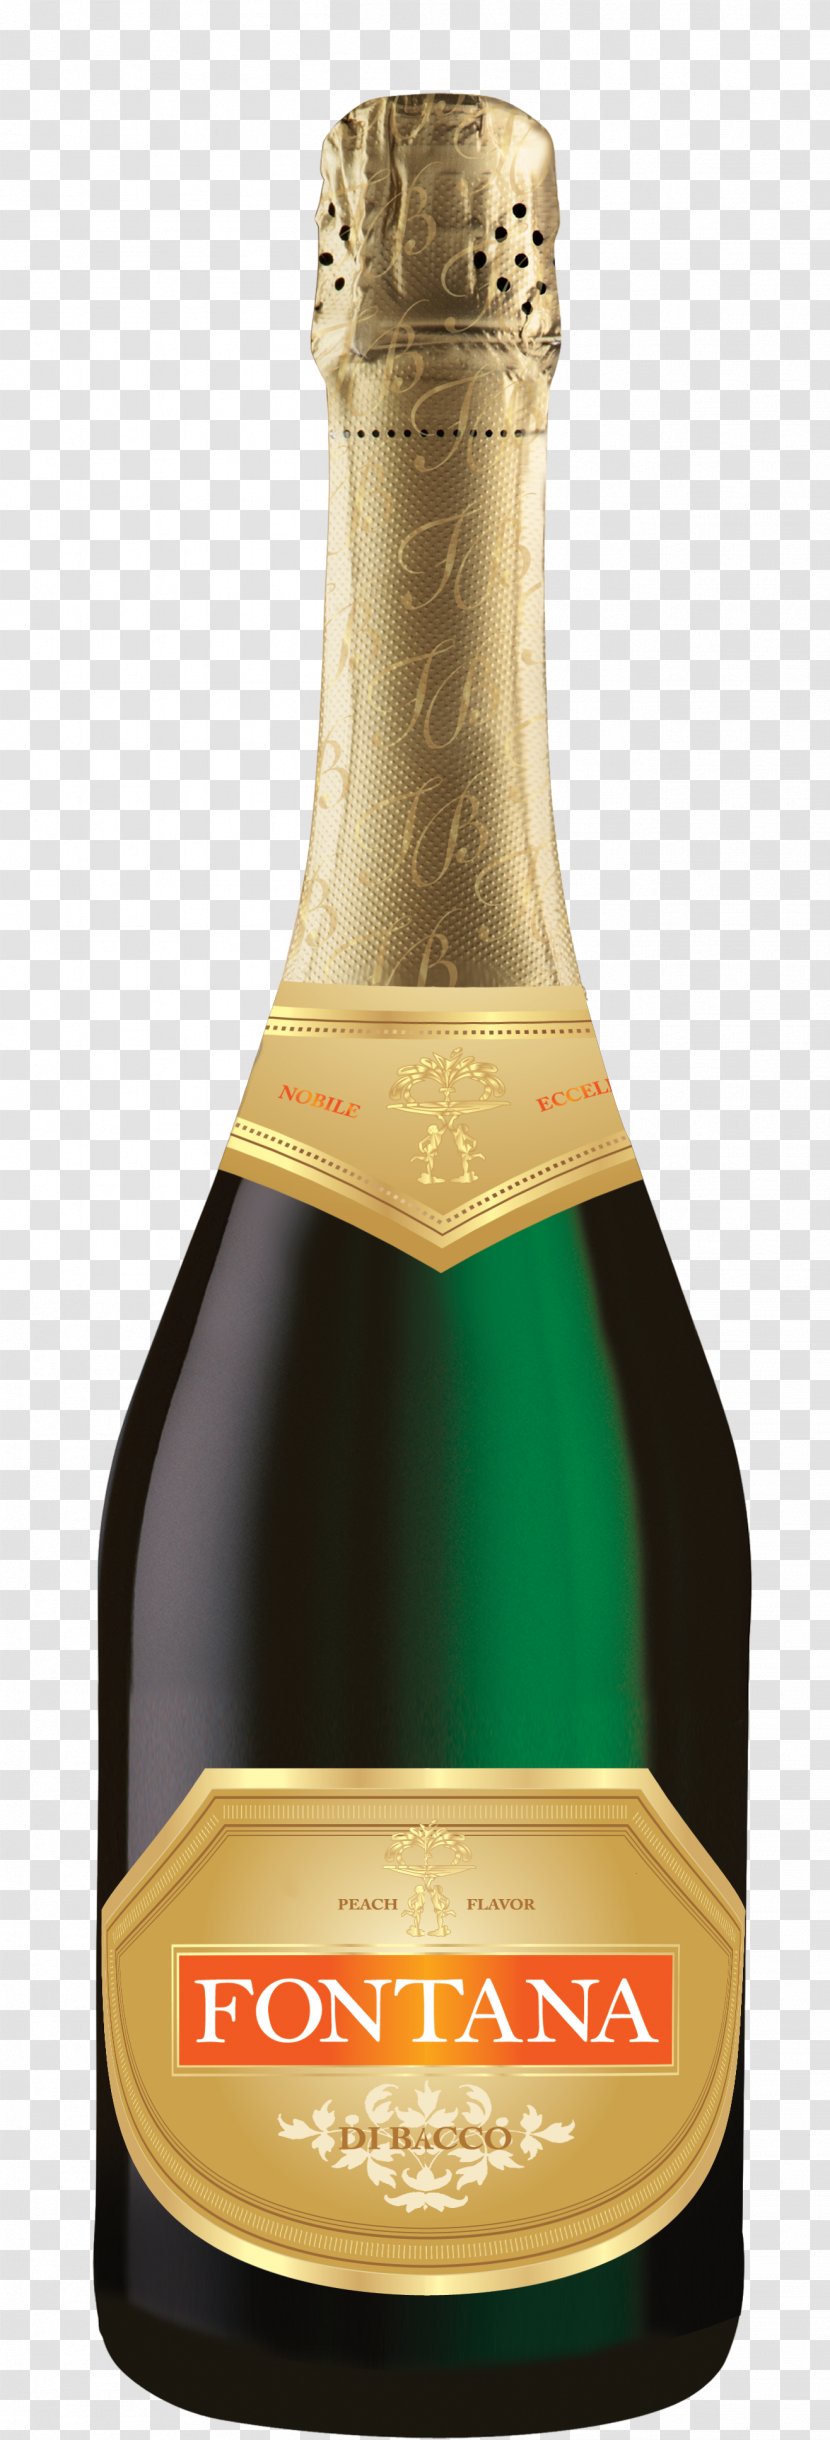 Champagne Liqueur Glass Bottle Transparent PNG